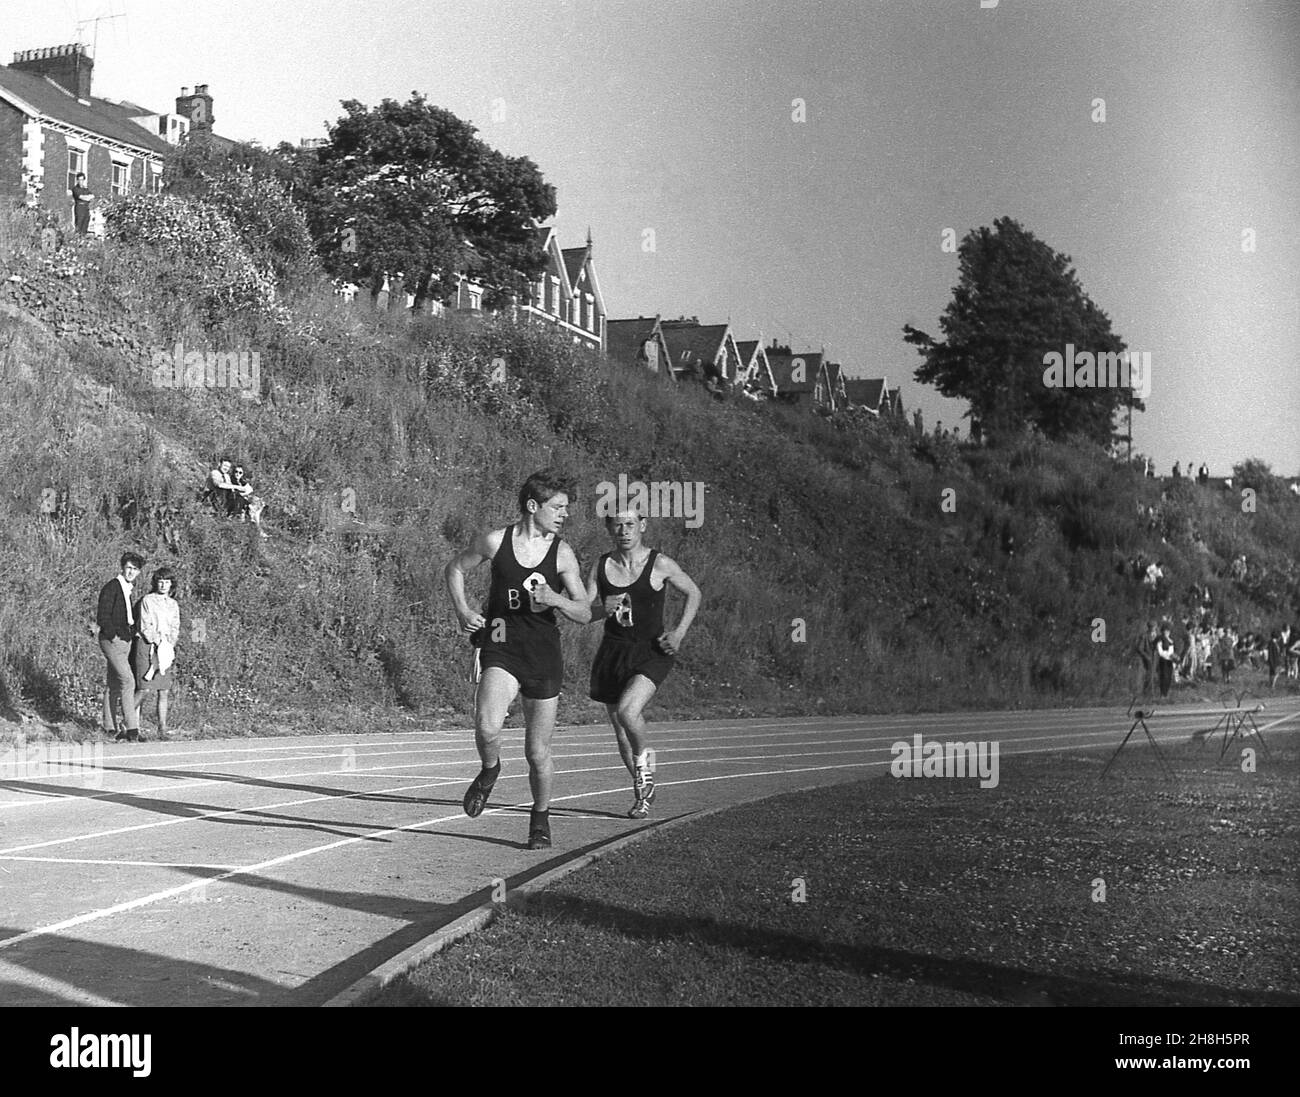 1964, storico, estivo ed esterno su una pista di cinder, due ragazzi adolescenti che gareggiano in una gara di corsa ad una giornata sportiva della scuola della contea, Devon, Inghilterra, Regno Unito. Foto Stock